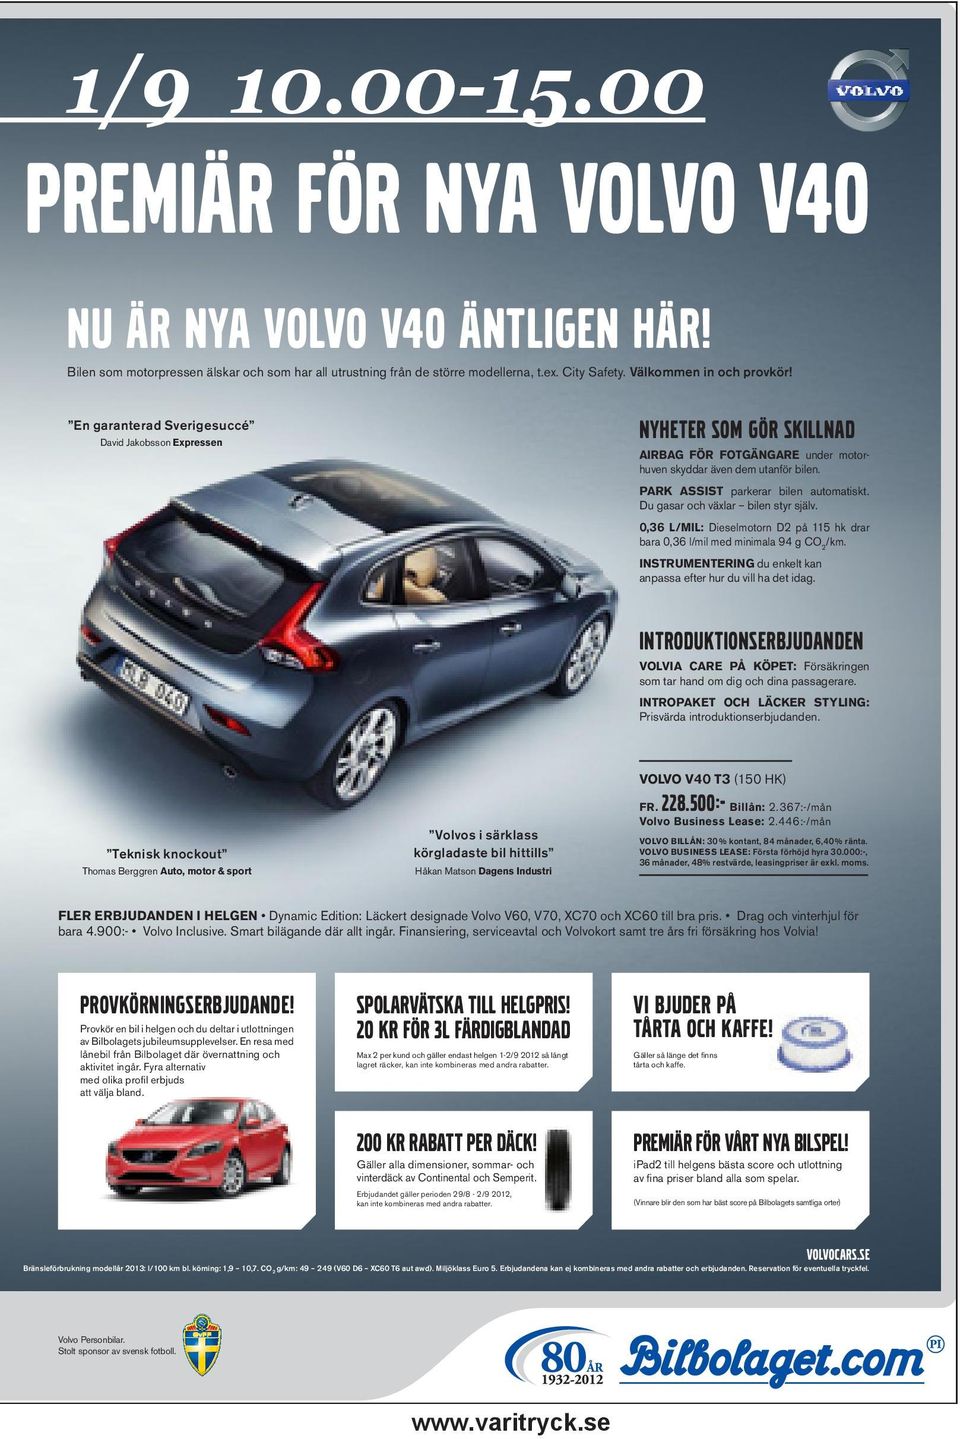 Matson Dagens Industri VOLVO V40 T3 FR. Billån: Volvo Business Lease: VOLVO BILLÅN: 30 % kontant, 84 månader, 6,40 % ränta. VOLVO BUSINESS LEASE: Första förhöjd hyra 30.